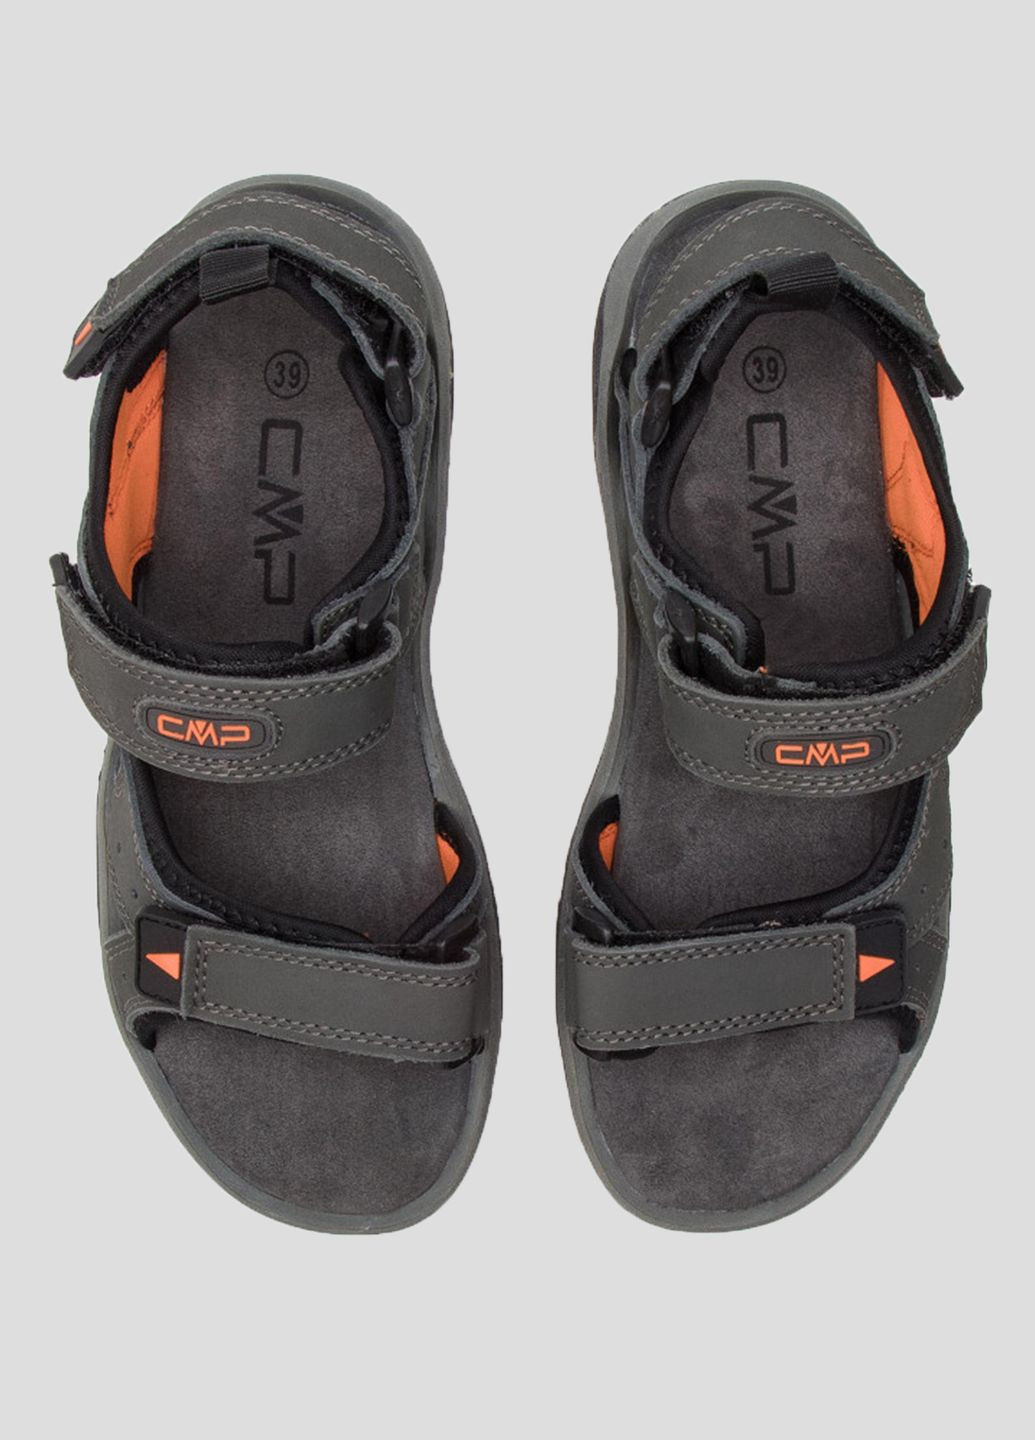 Спортивные темно-серые трекинговые сандалии almaak hiking sandal CMP